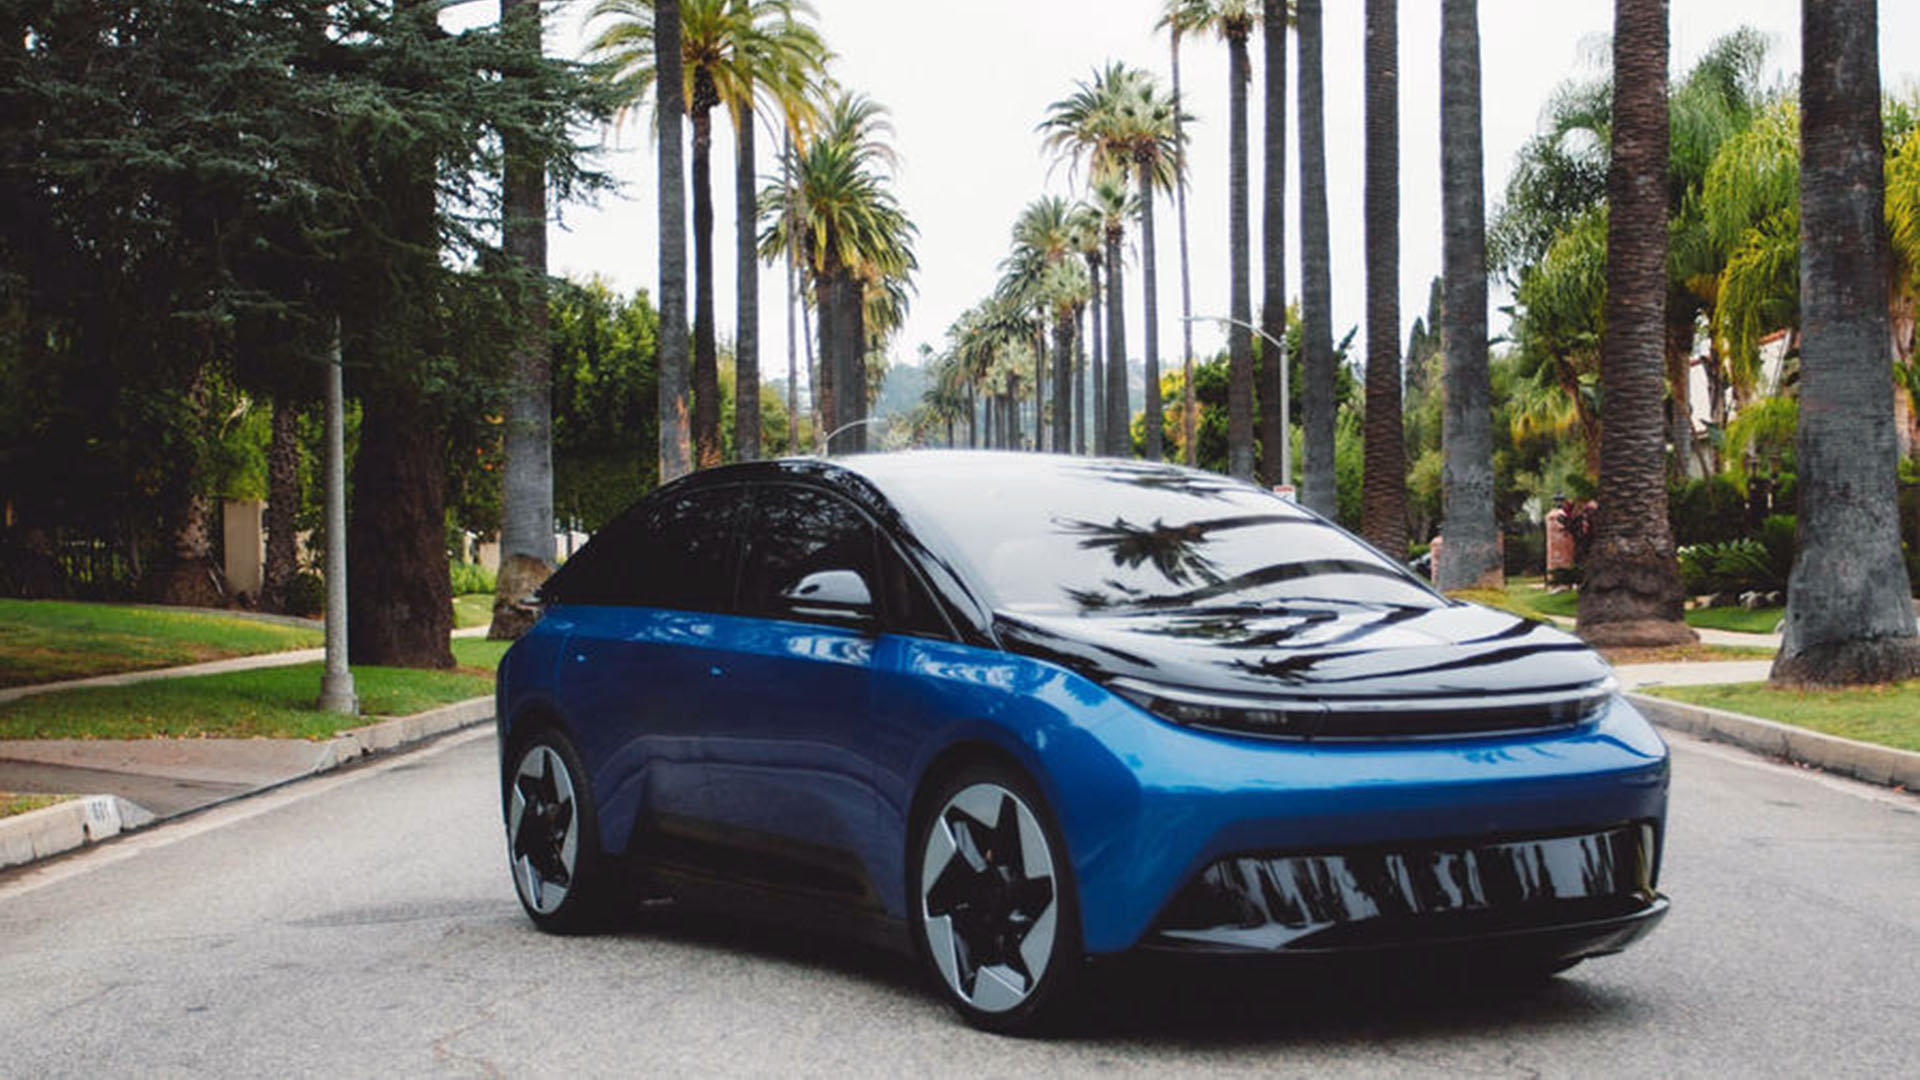 El Indi One que se vió por primera vez en el CES de Las Vegas, ahora tiene fecha de lanzamiento, precios y características que pretenden convertirlo en un vehículo eléctrico diferente a todos